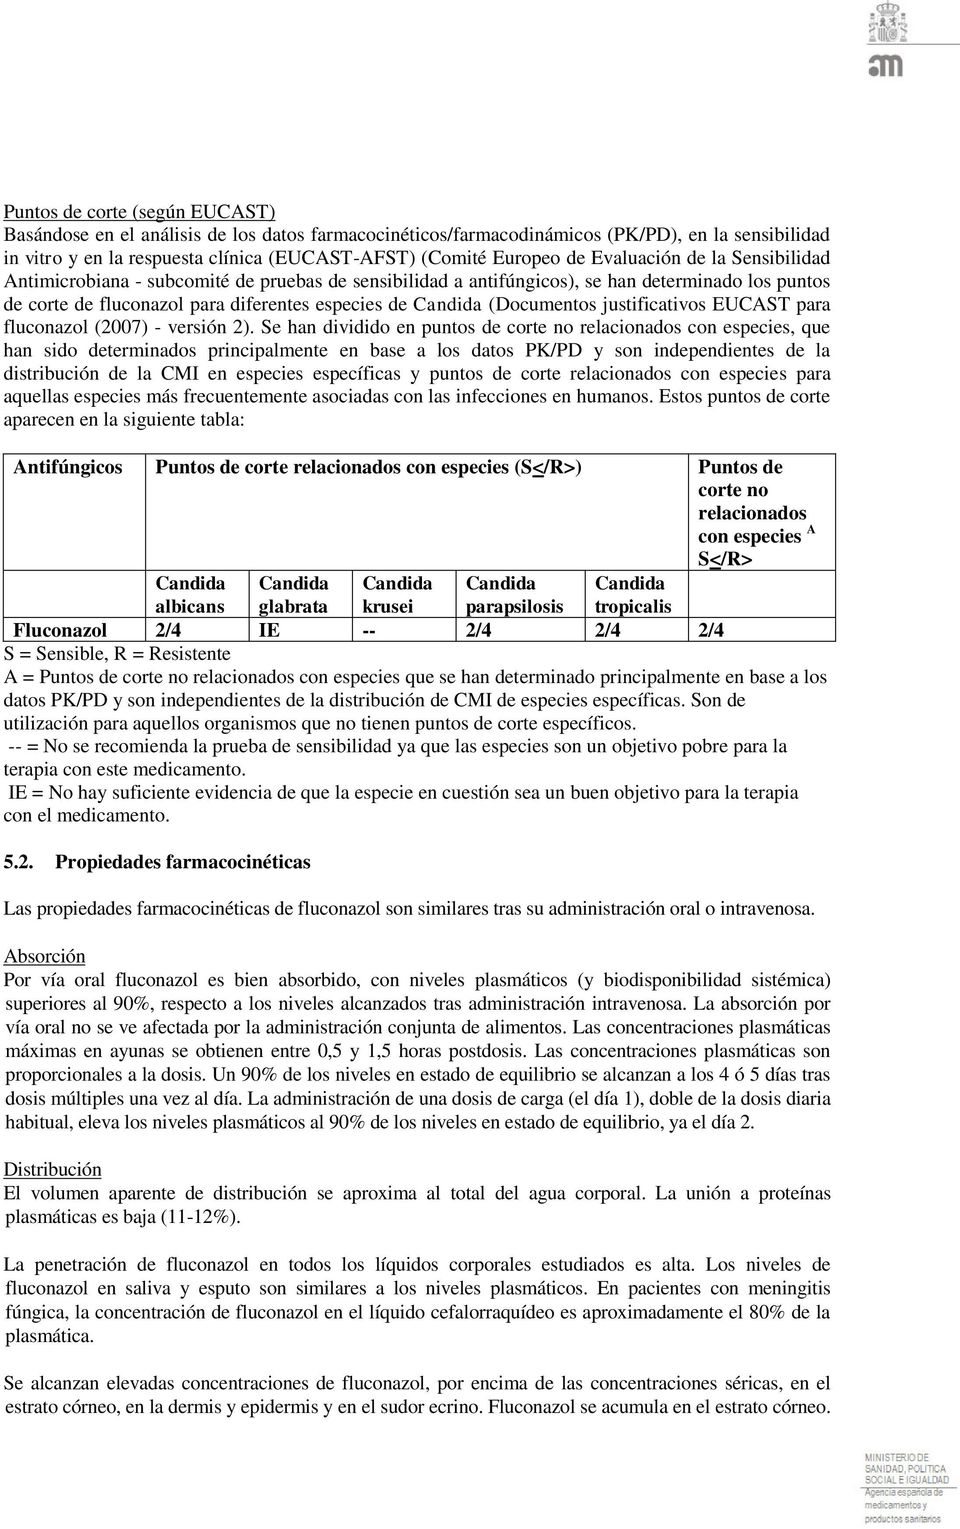 (Documentos justificativos EUCAST para fluconazol (2007) - versión 2).